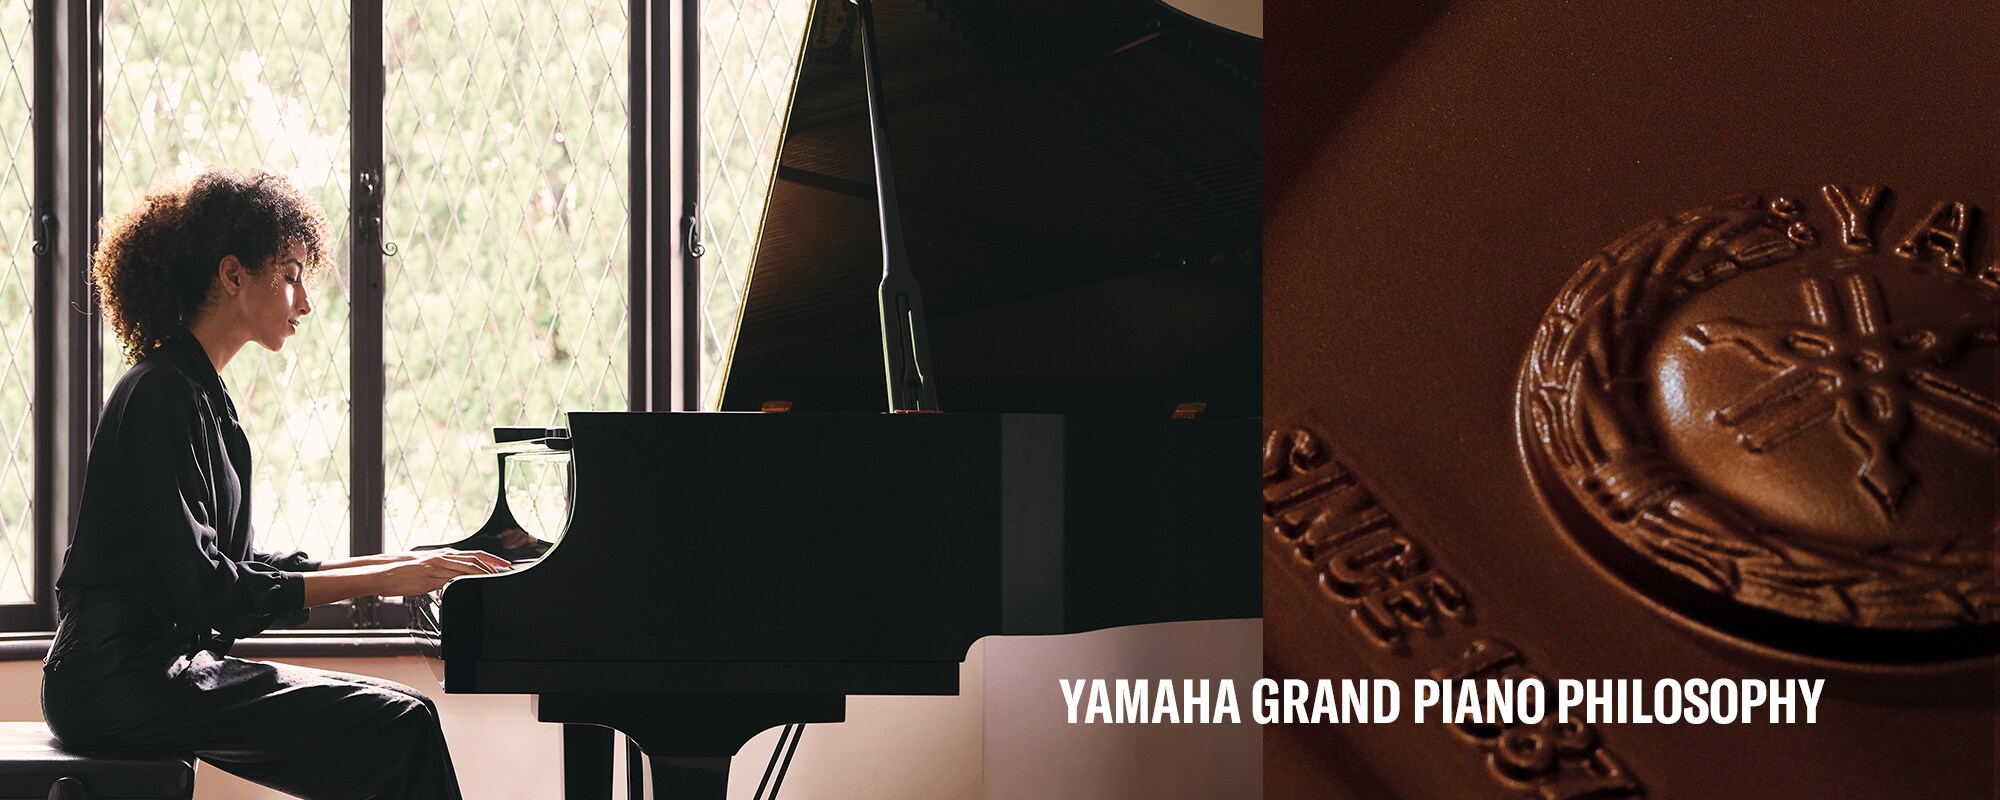 Yamaha 平台鋼琴理念的主要視覺呈現